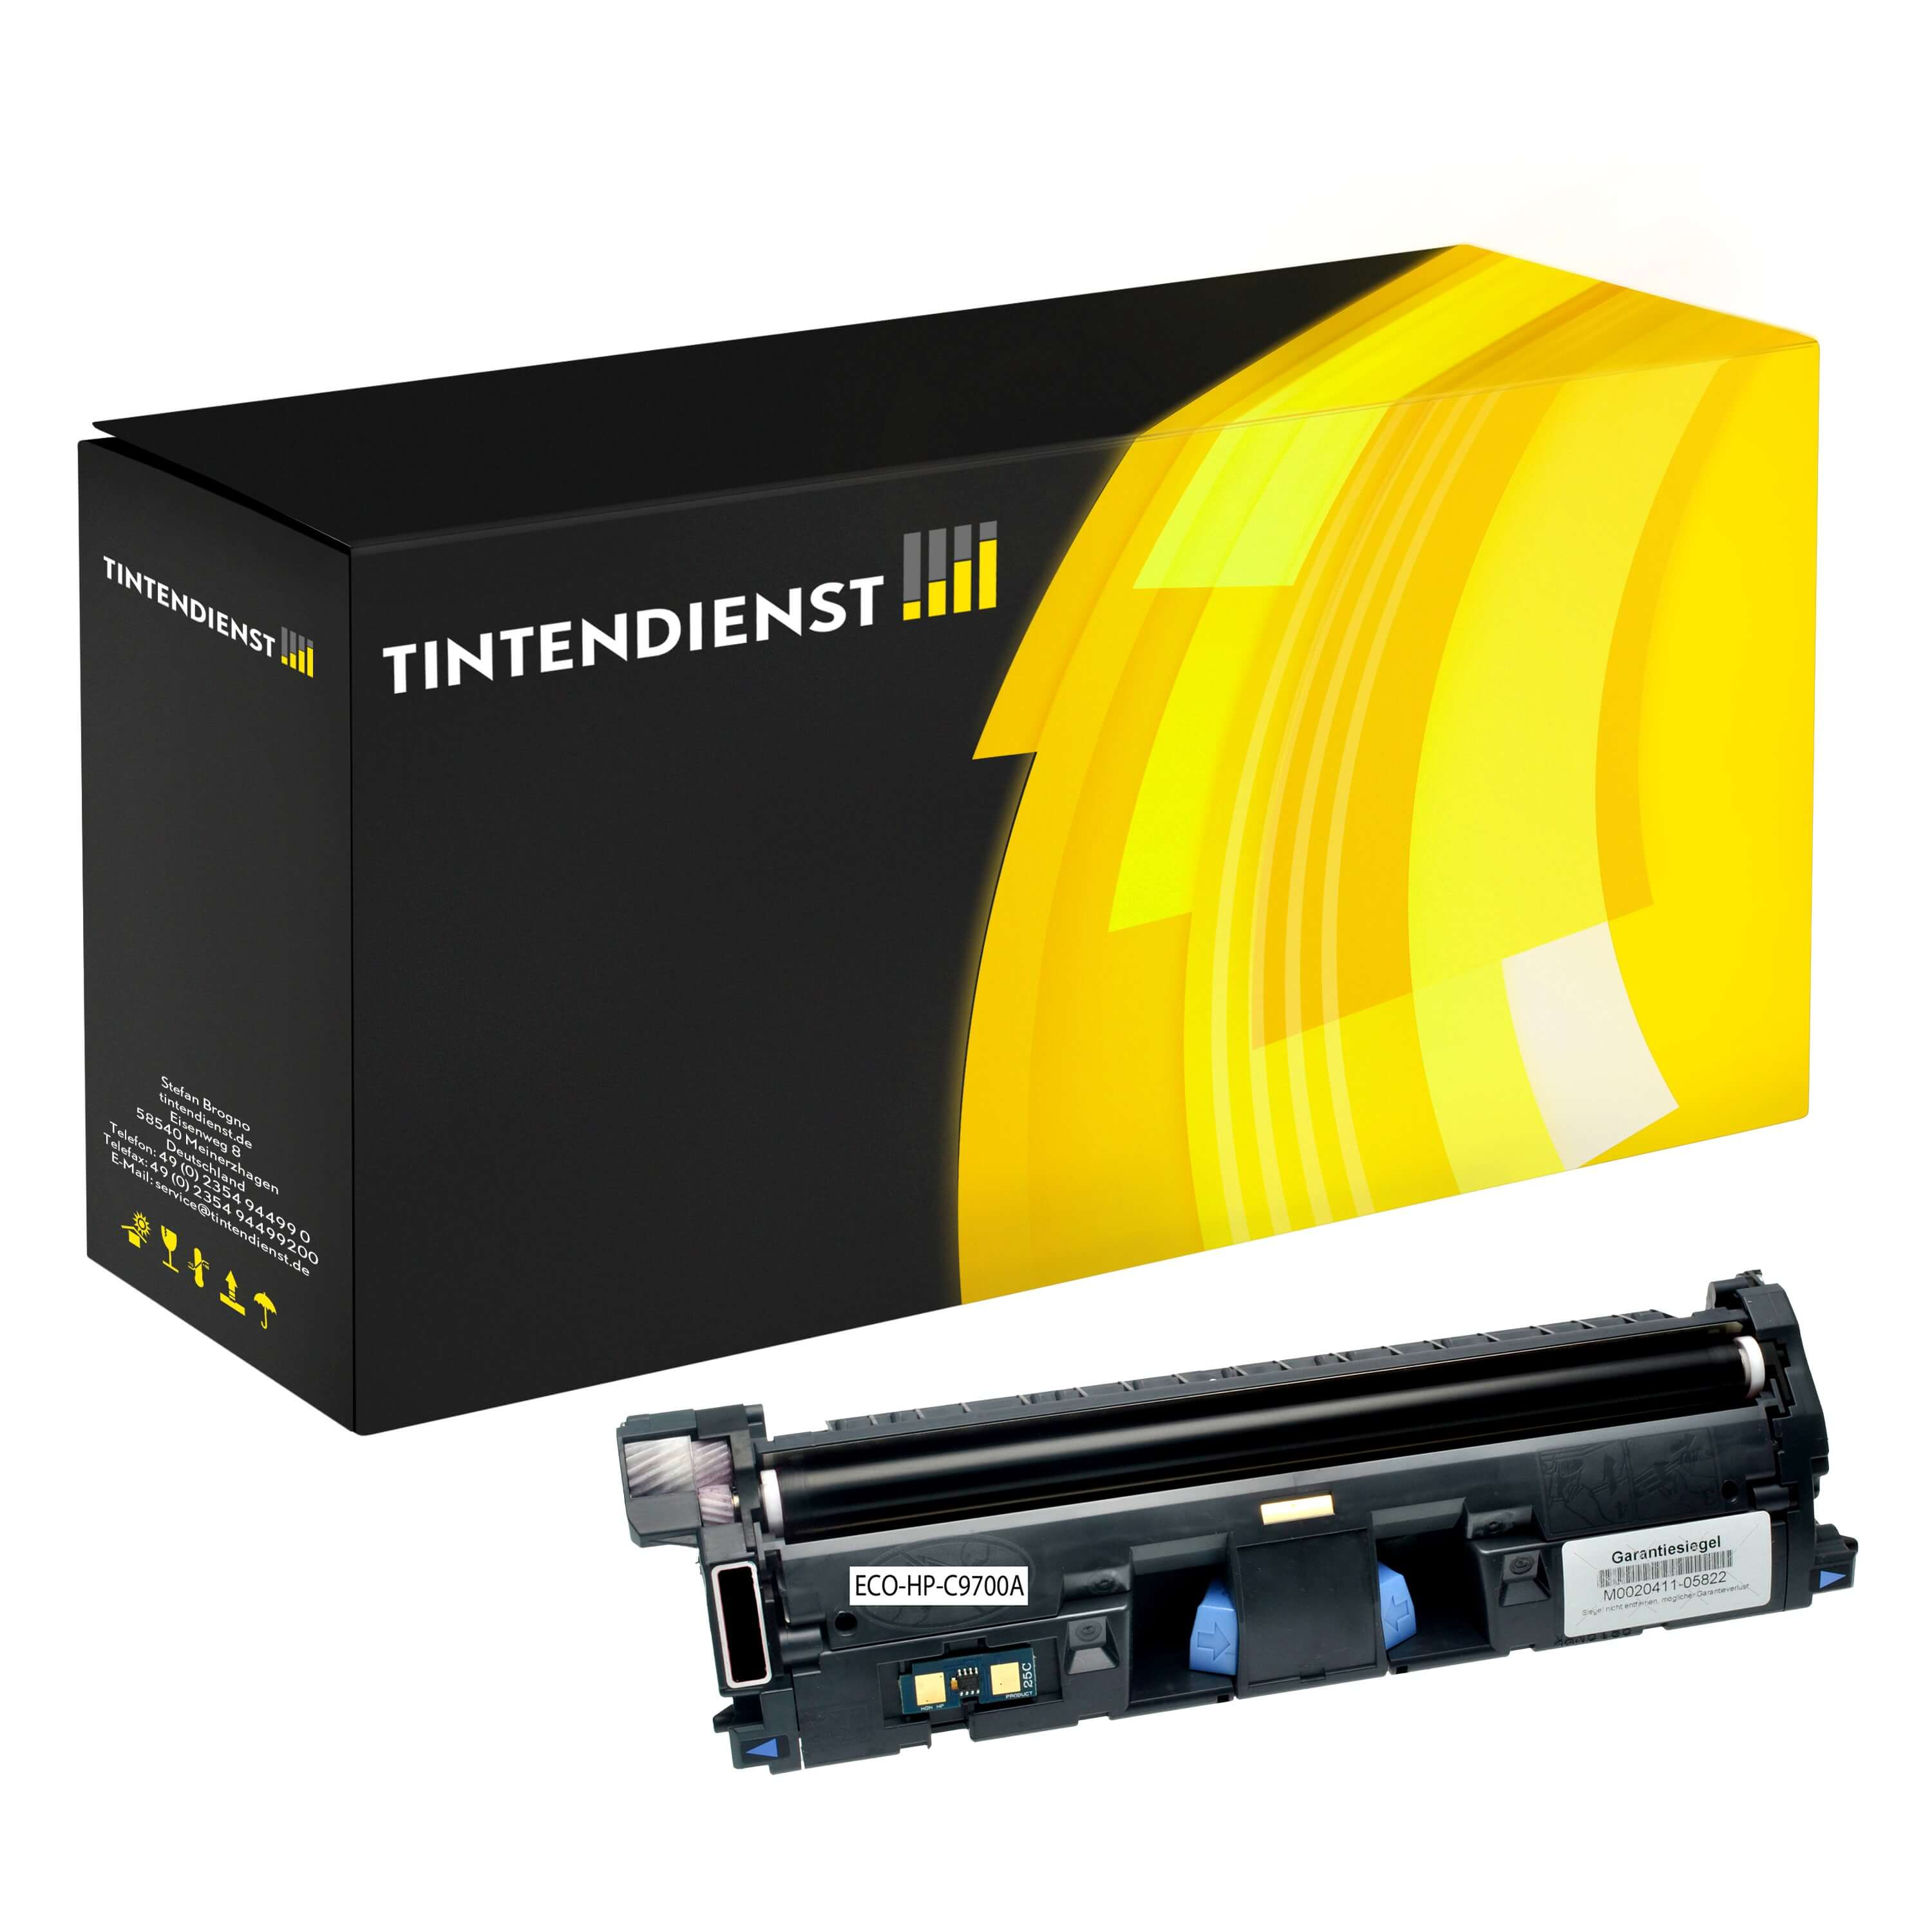 Toner kompatibel für HP Color LaserJet 2500 (C9700A / 121A) Schwarz